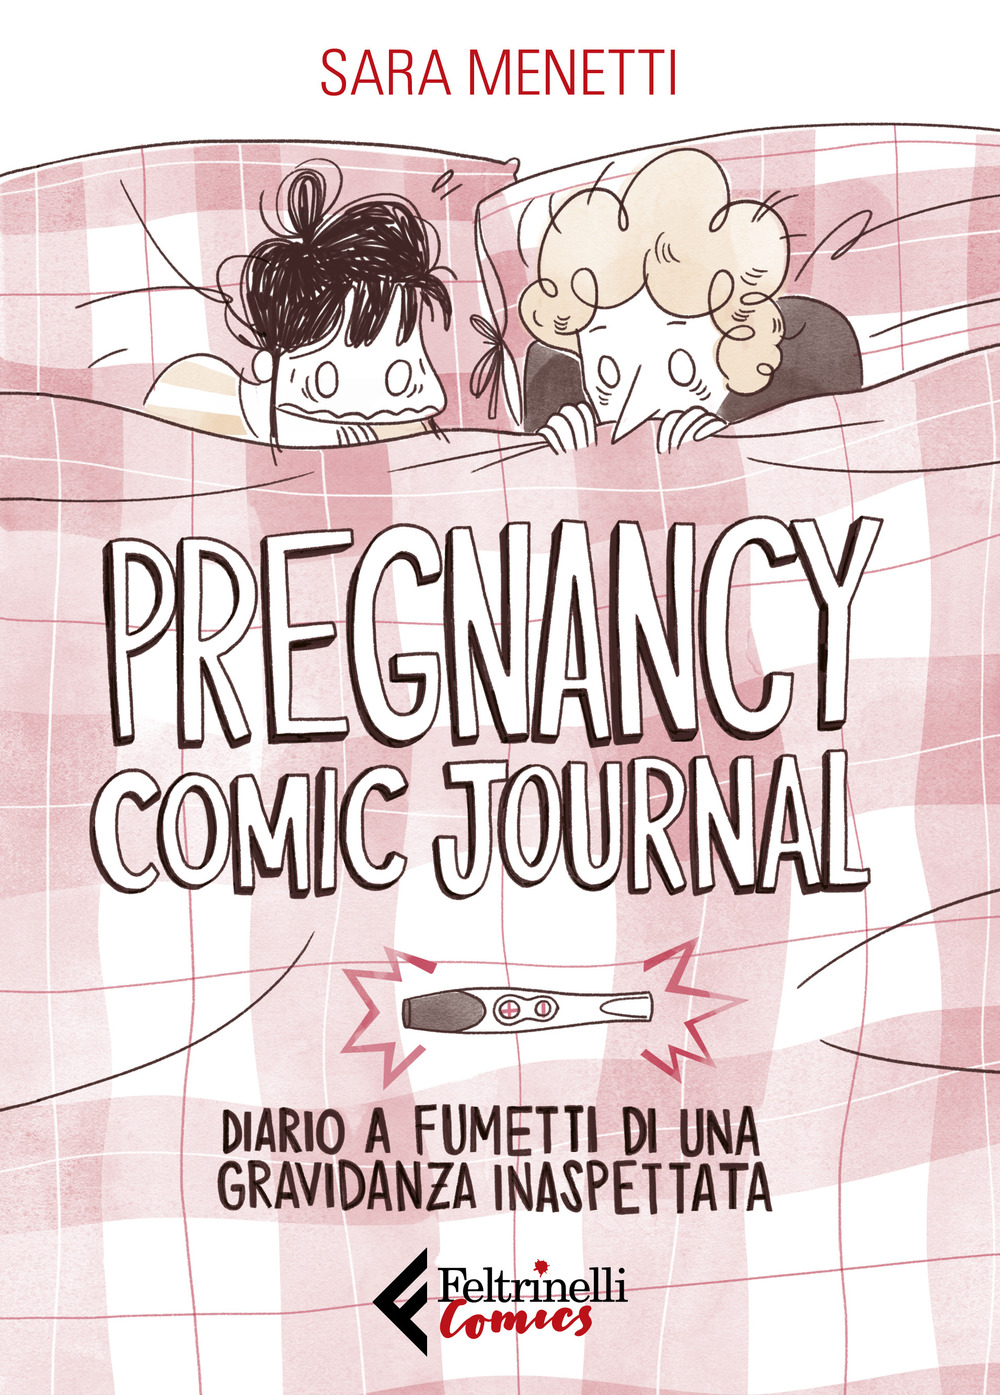 Libri Menetti Sara - Pregnancy Comic Journal. Diario A Fumetti Di Una Gravidanza Inaspettata NUOVO SIGILLATO, EDIZIONE DEL 20/02/2020 SUBITO DISPONIBILE